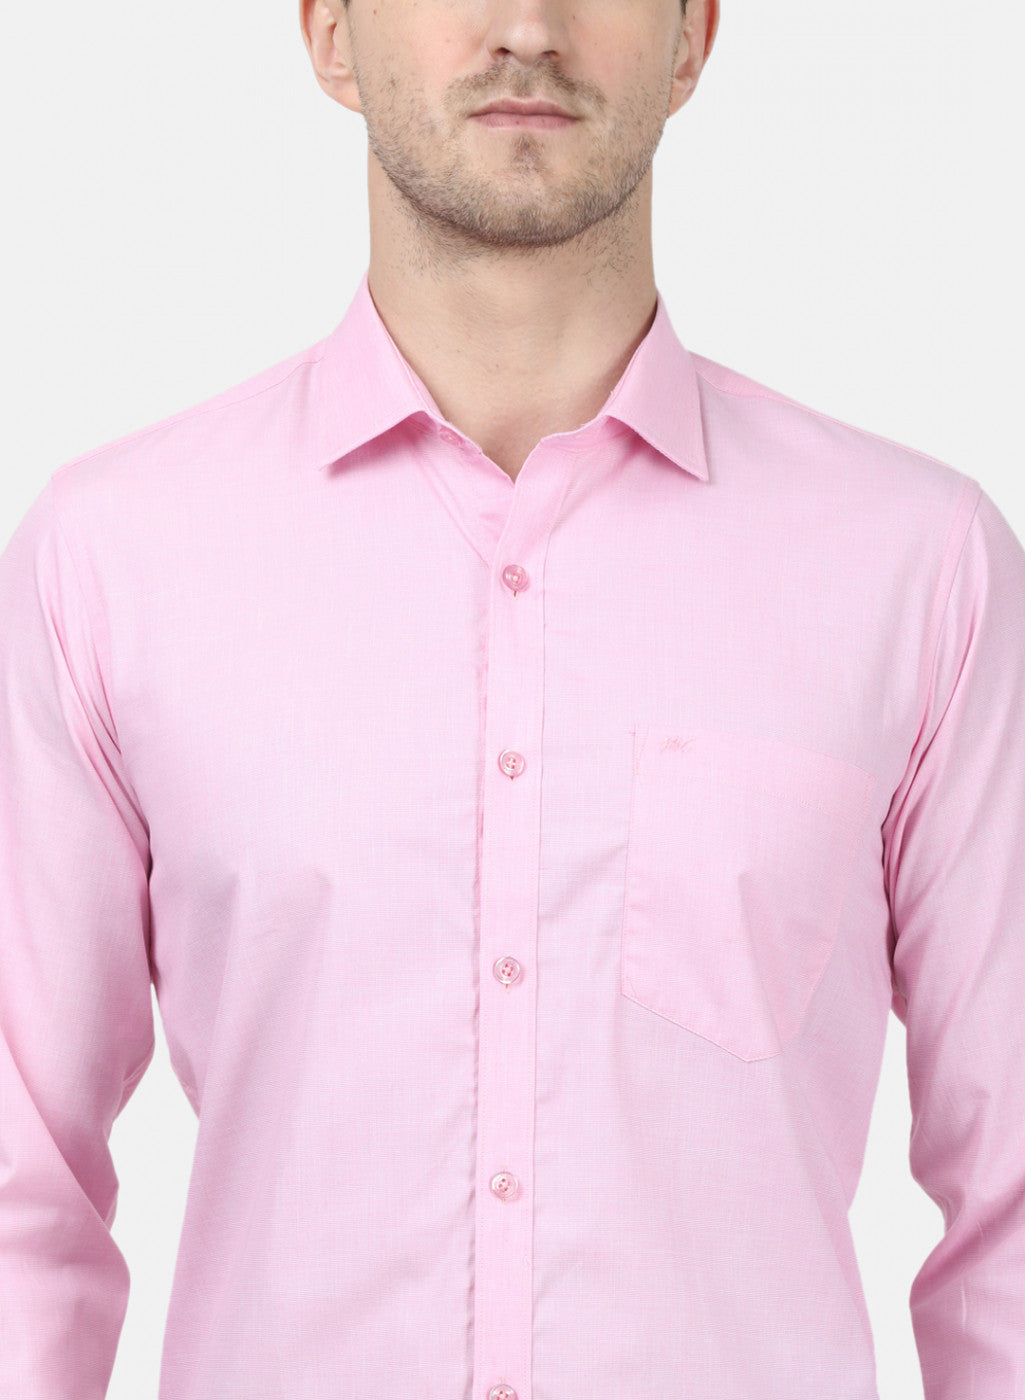 Mens Pink Solid Shirts